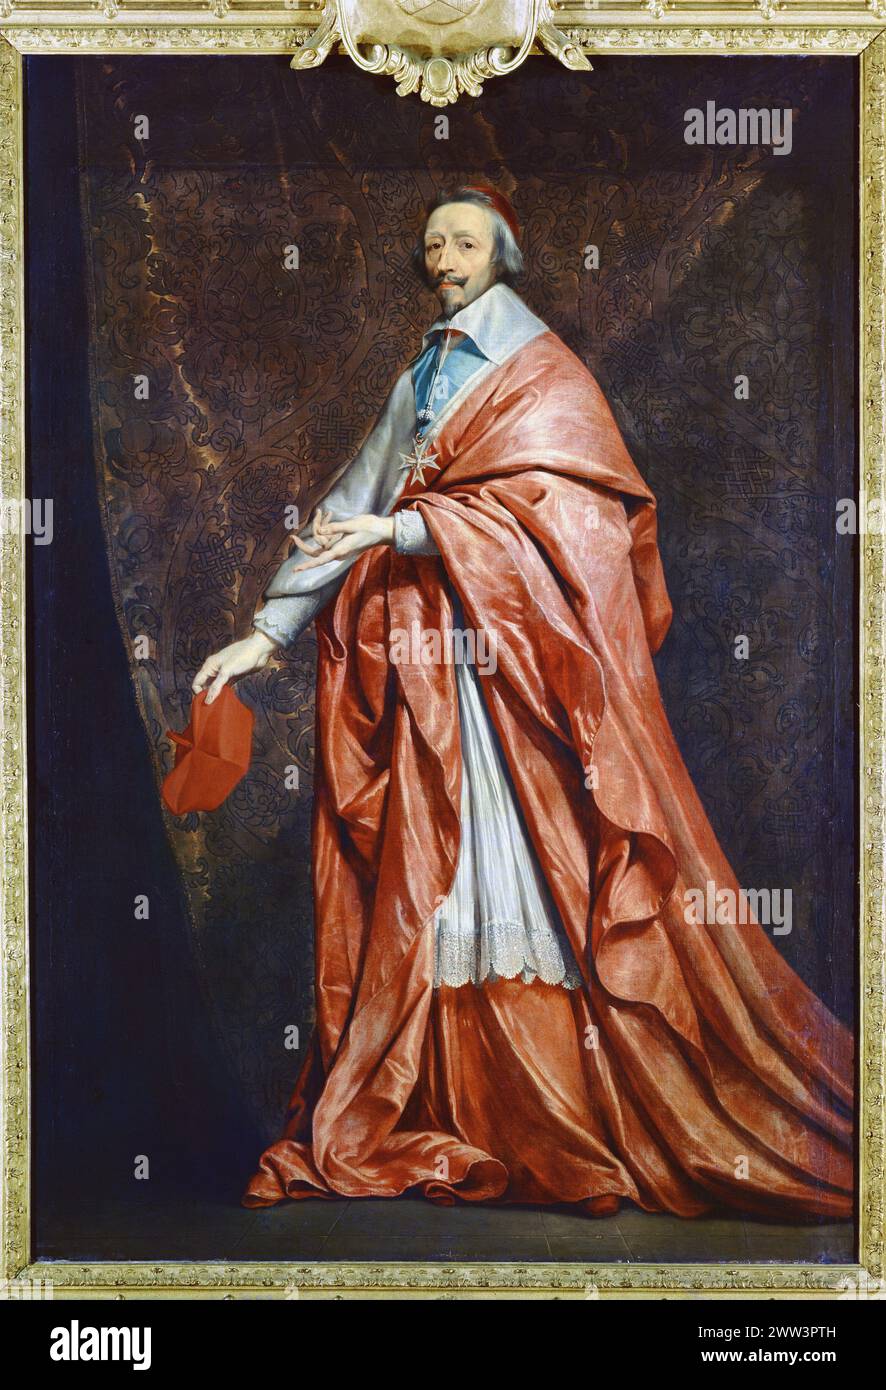 Kardinal Richelieu. Gemälde von Philippe de Champaigne (1602-1674). Musée du Louvre, Paris. - Armand Jean du Plessis de Richelieu Stockfoto